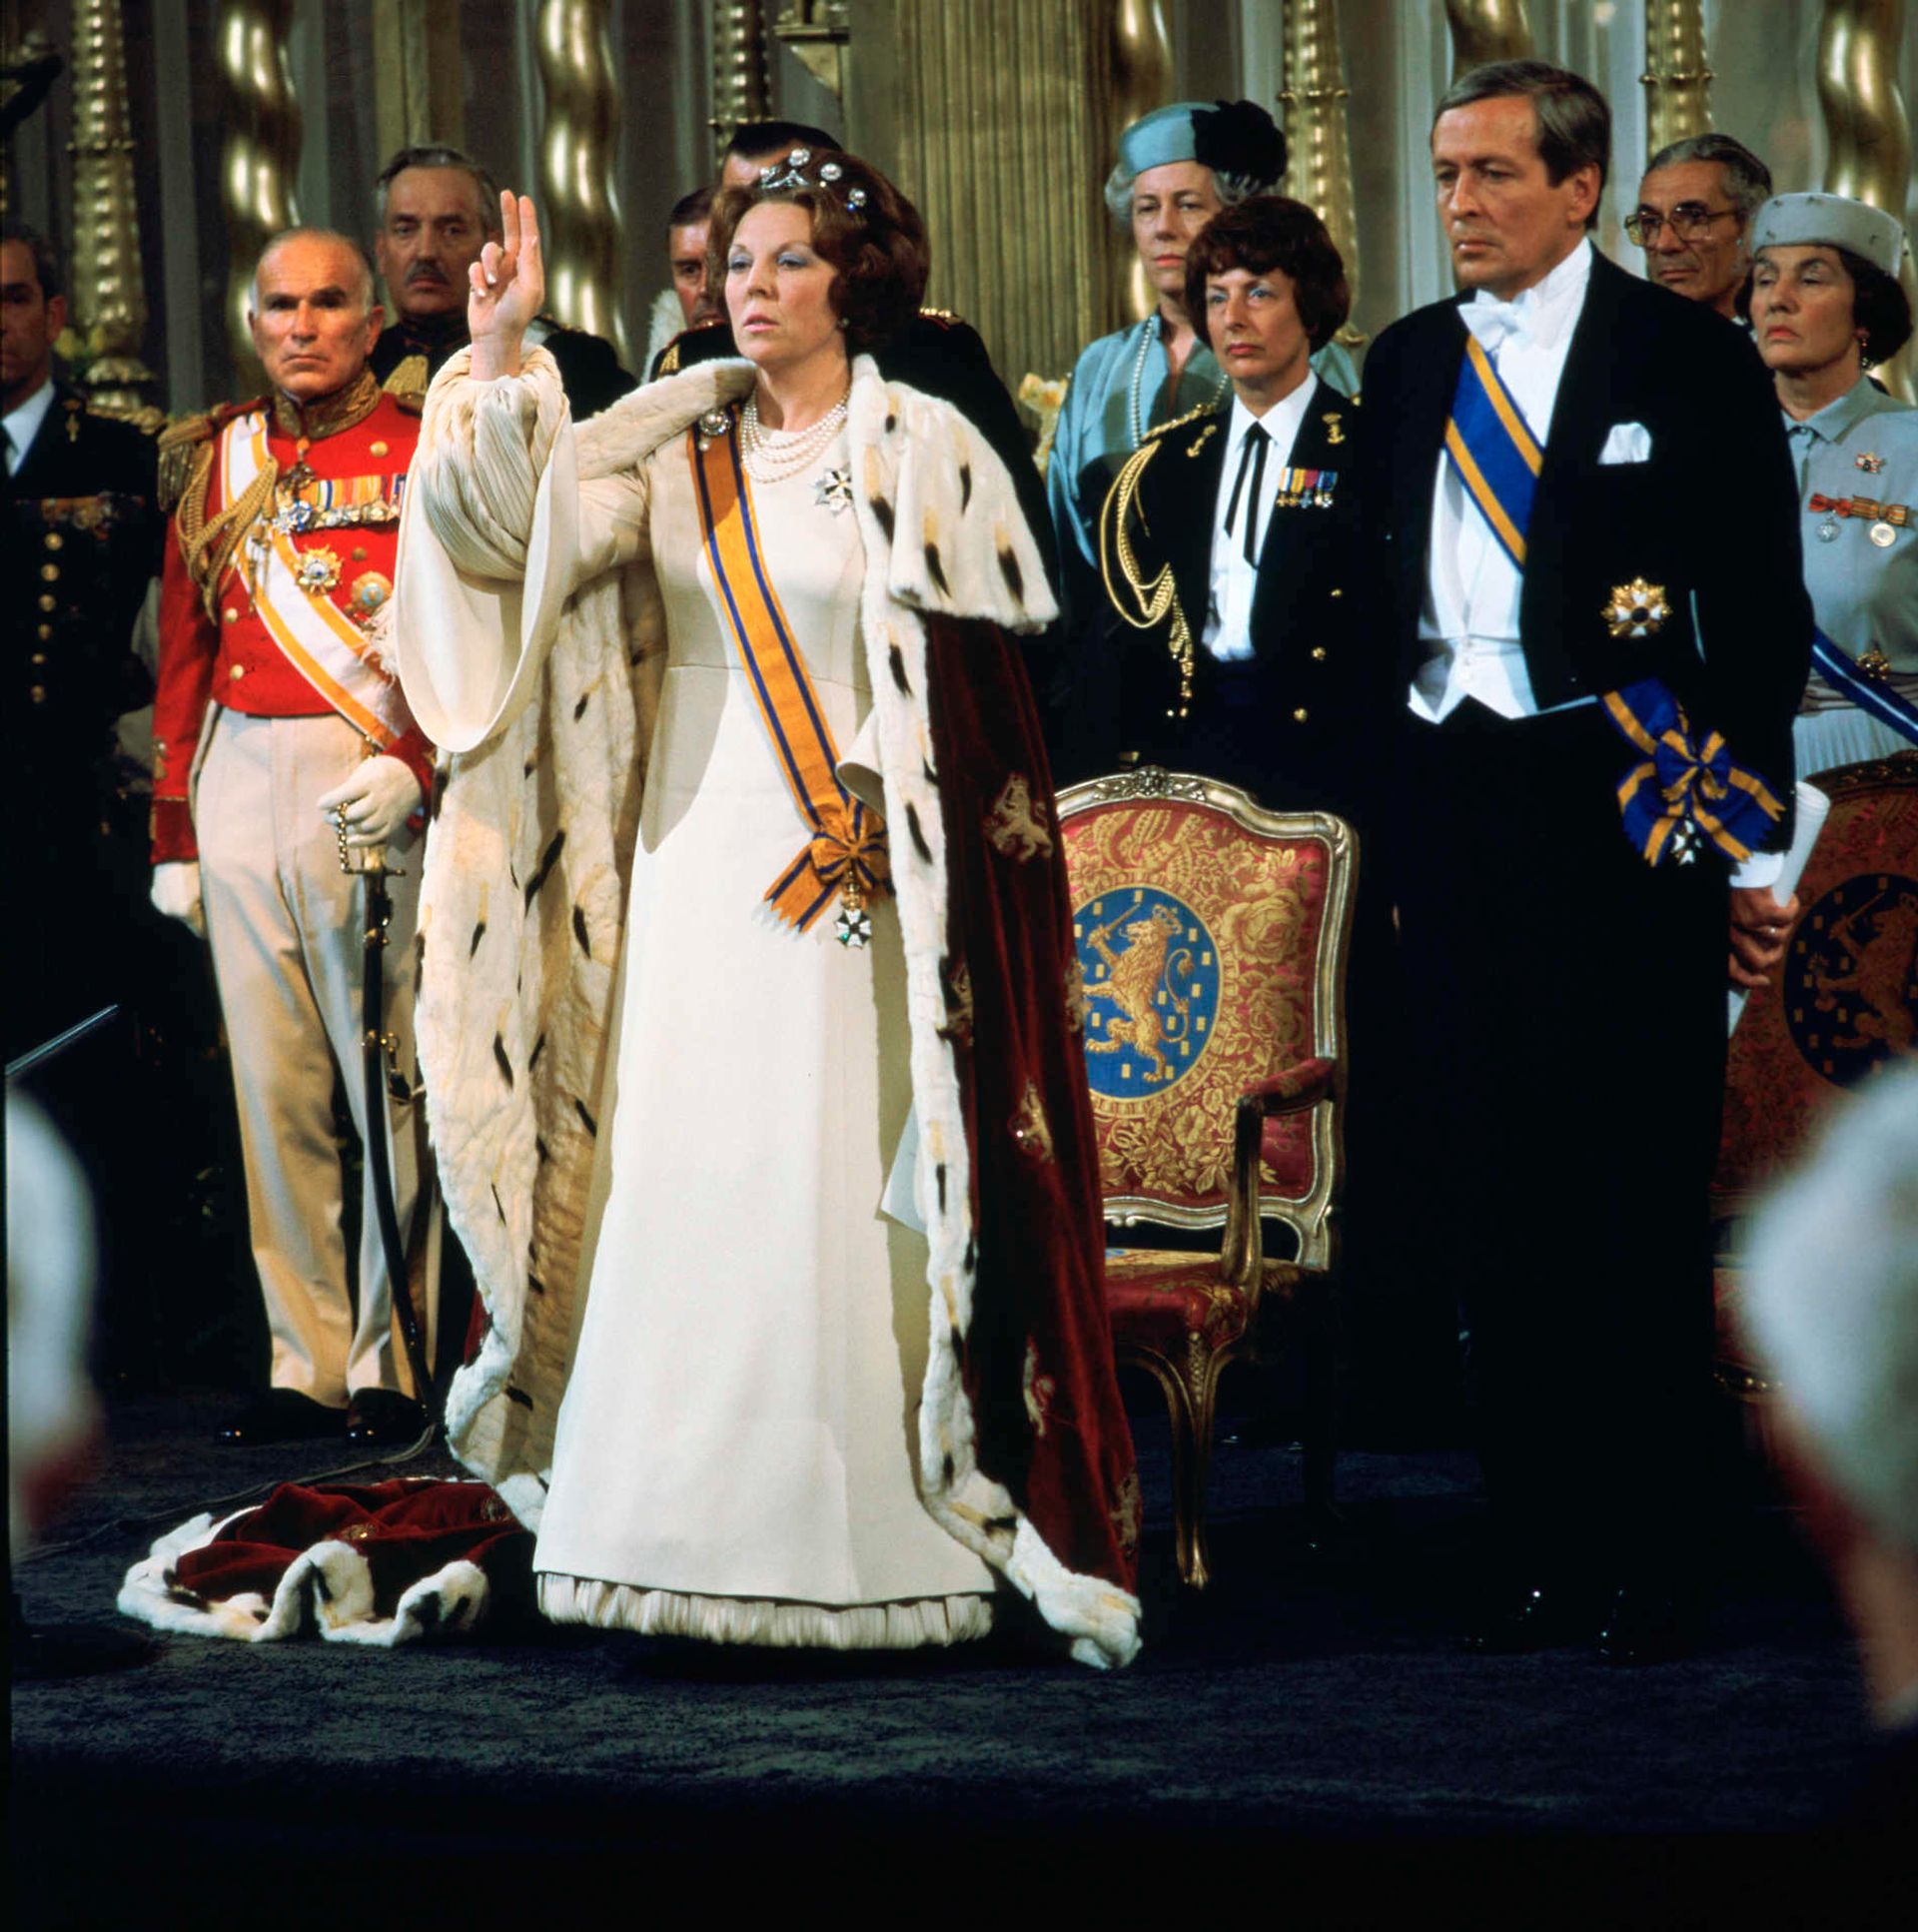 1980-Koningin-Beatrix-legt-de-eed-af-tijdens-haar-inhuldiging-als-koningin-in-de-Nieuwe-Kerk-in-Amsterdam